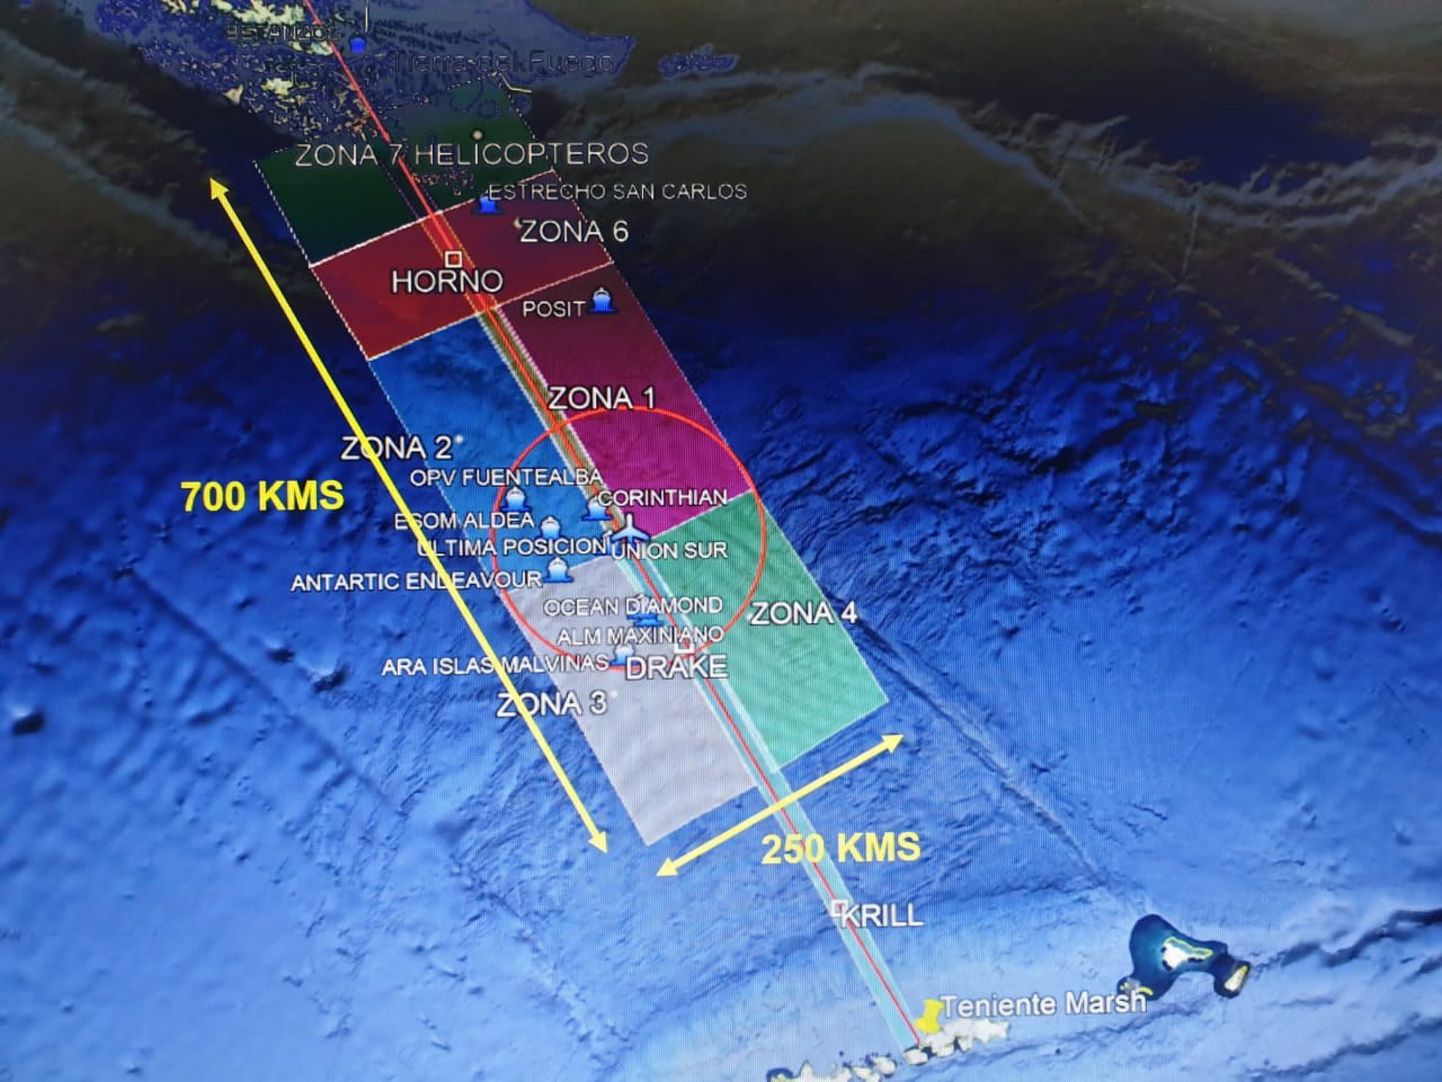 Meklēšana tika koncentrēta Dreika šaurumā, kas atdala Dienvidameriku no Antarktikas.